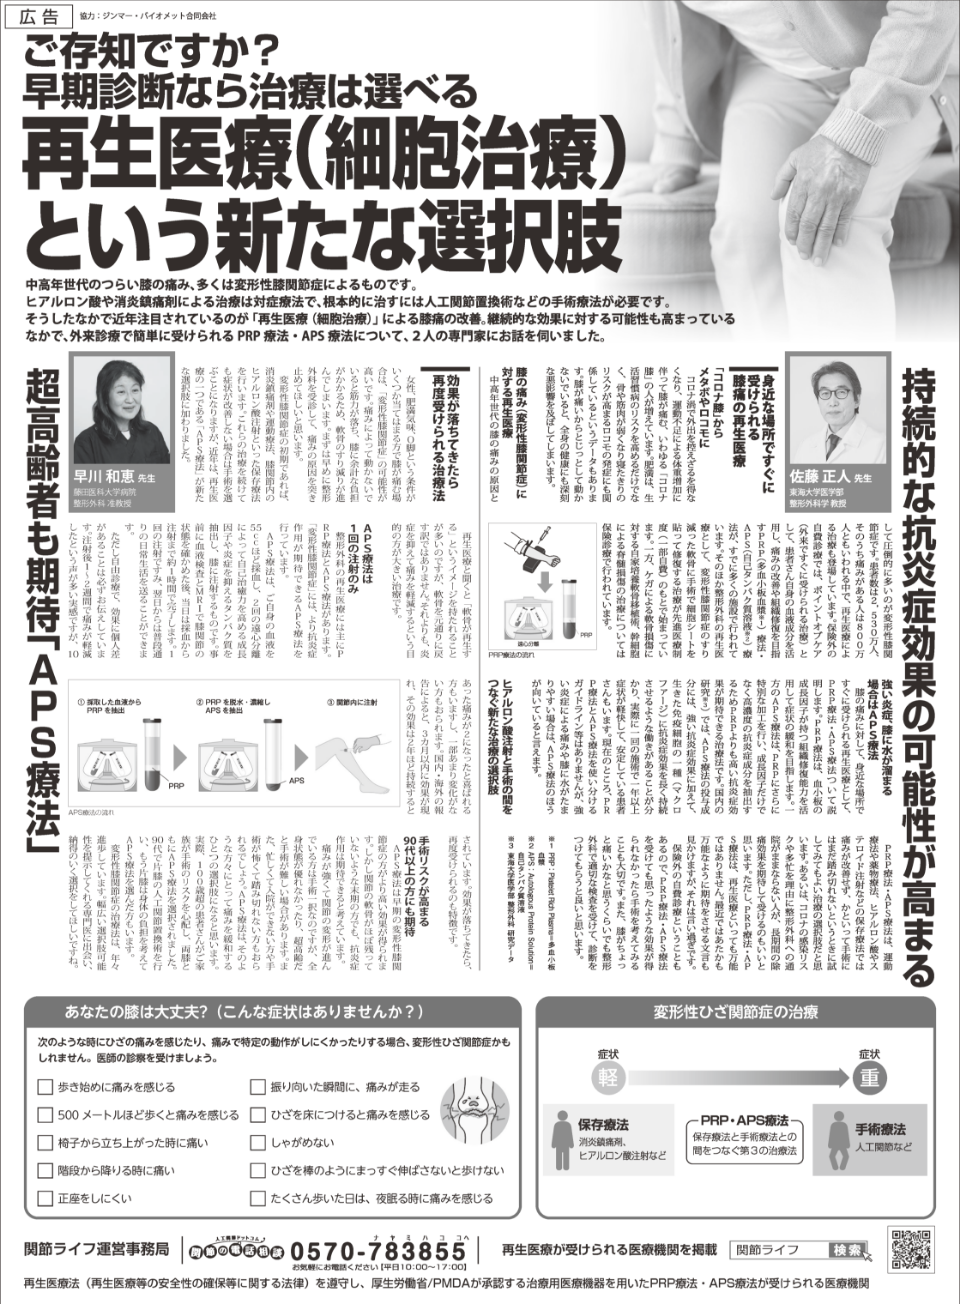 膝関節に対するAPS療法の新聞広告で、早川和恵准教授が紹介されました。